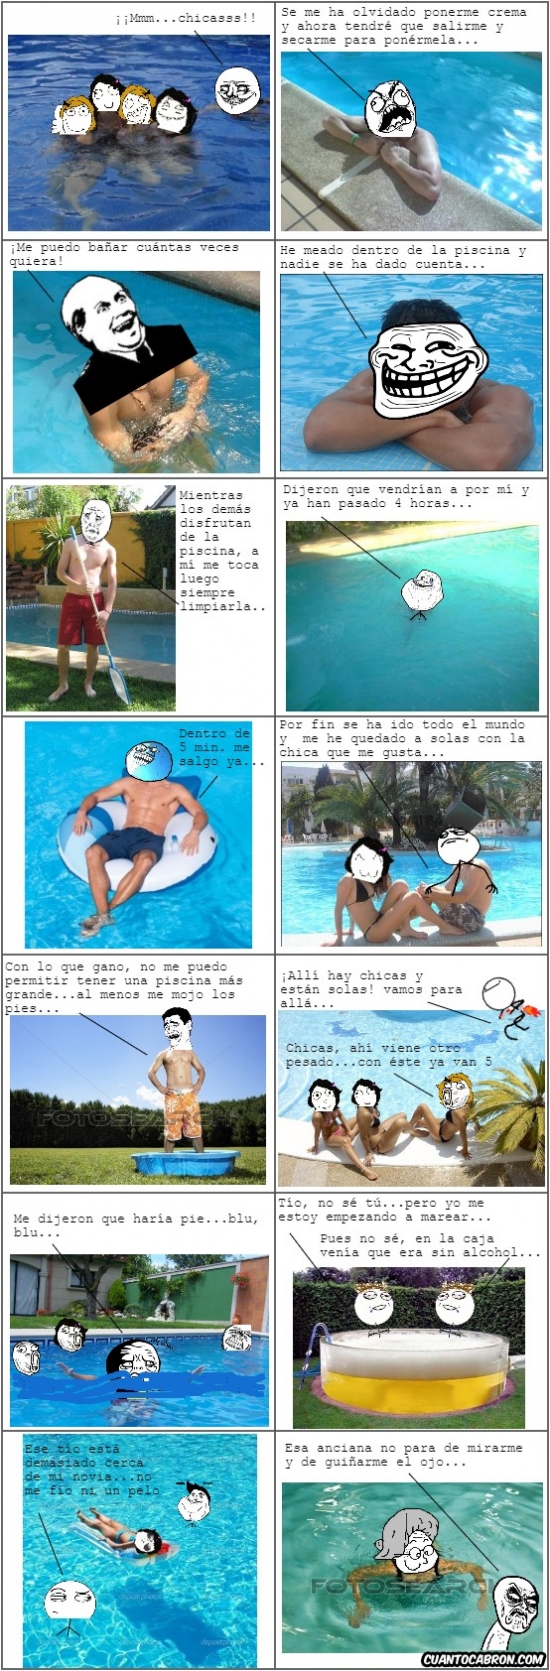 Mix - Memes en la piscina